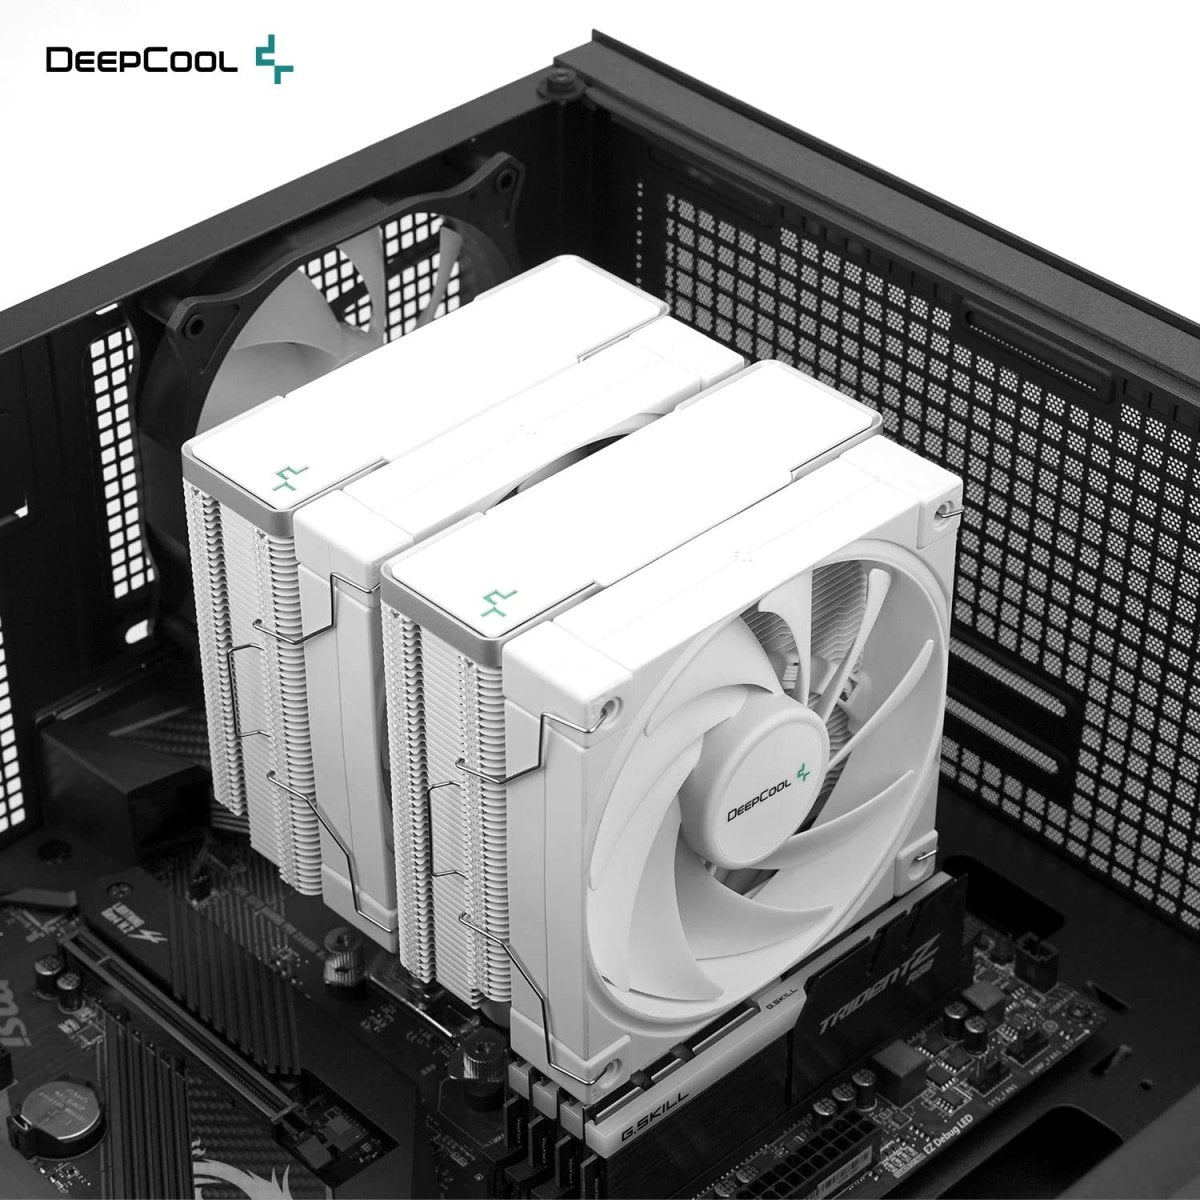 Deepcool Launches AK620 Dual-Tower CPU Air Cooler